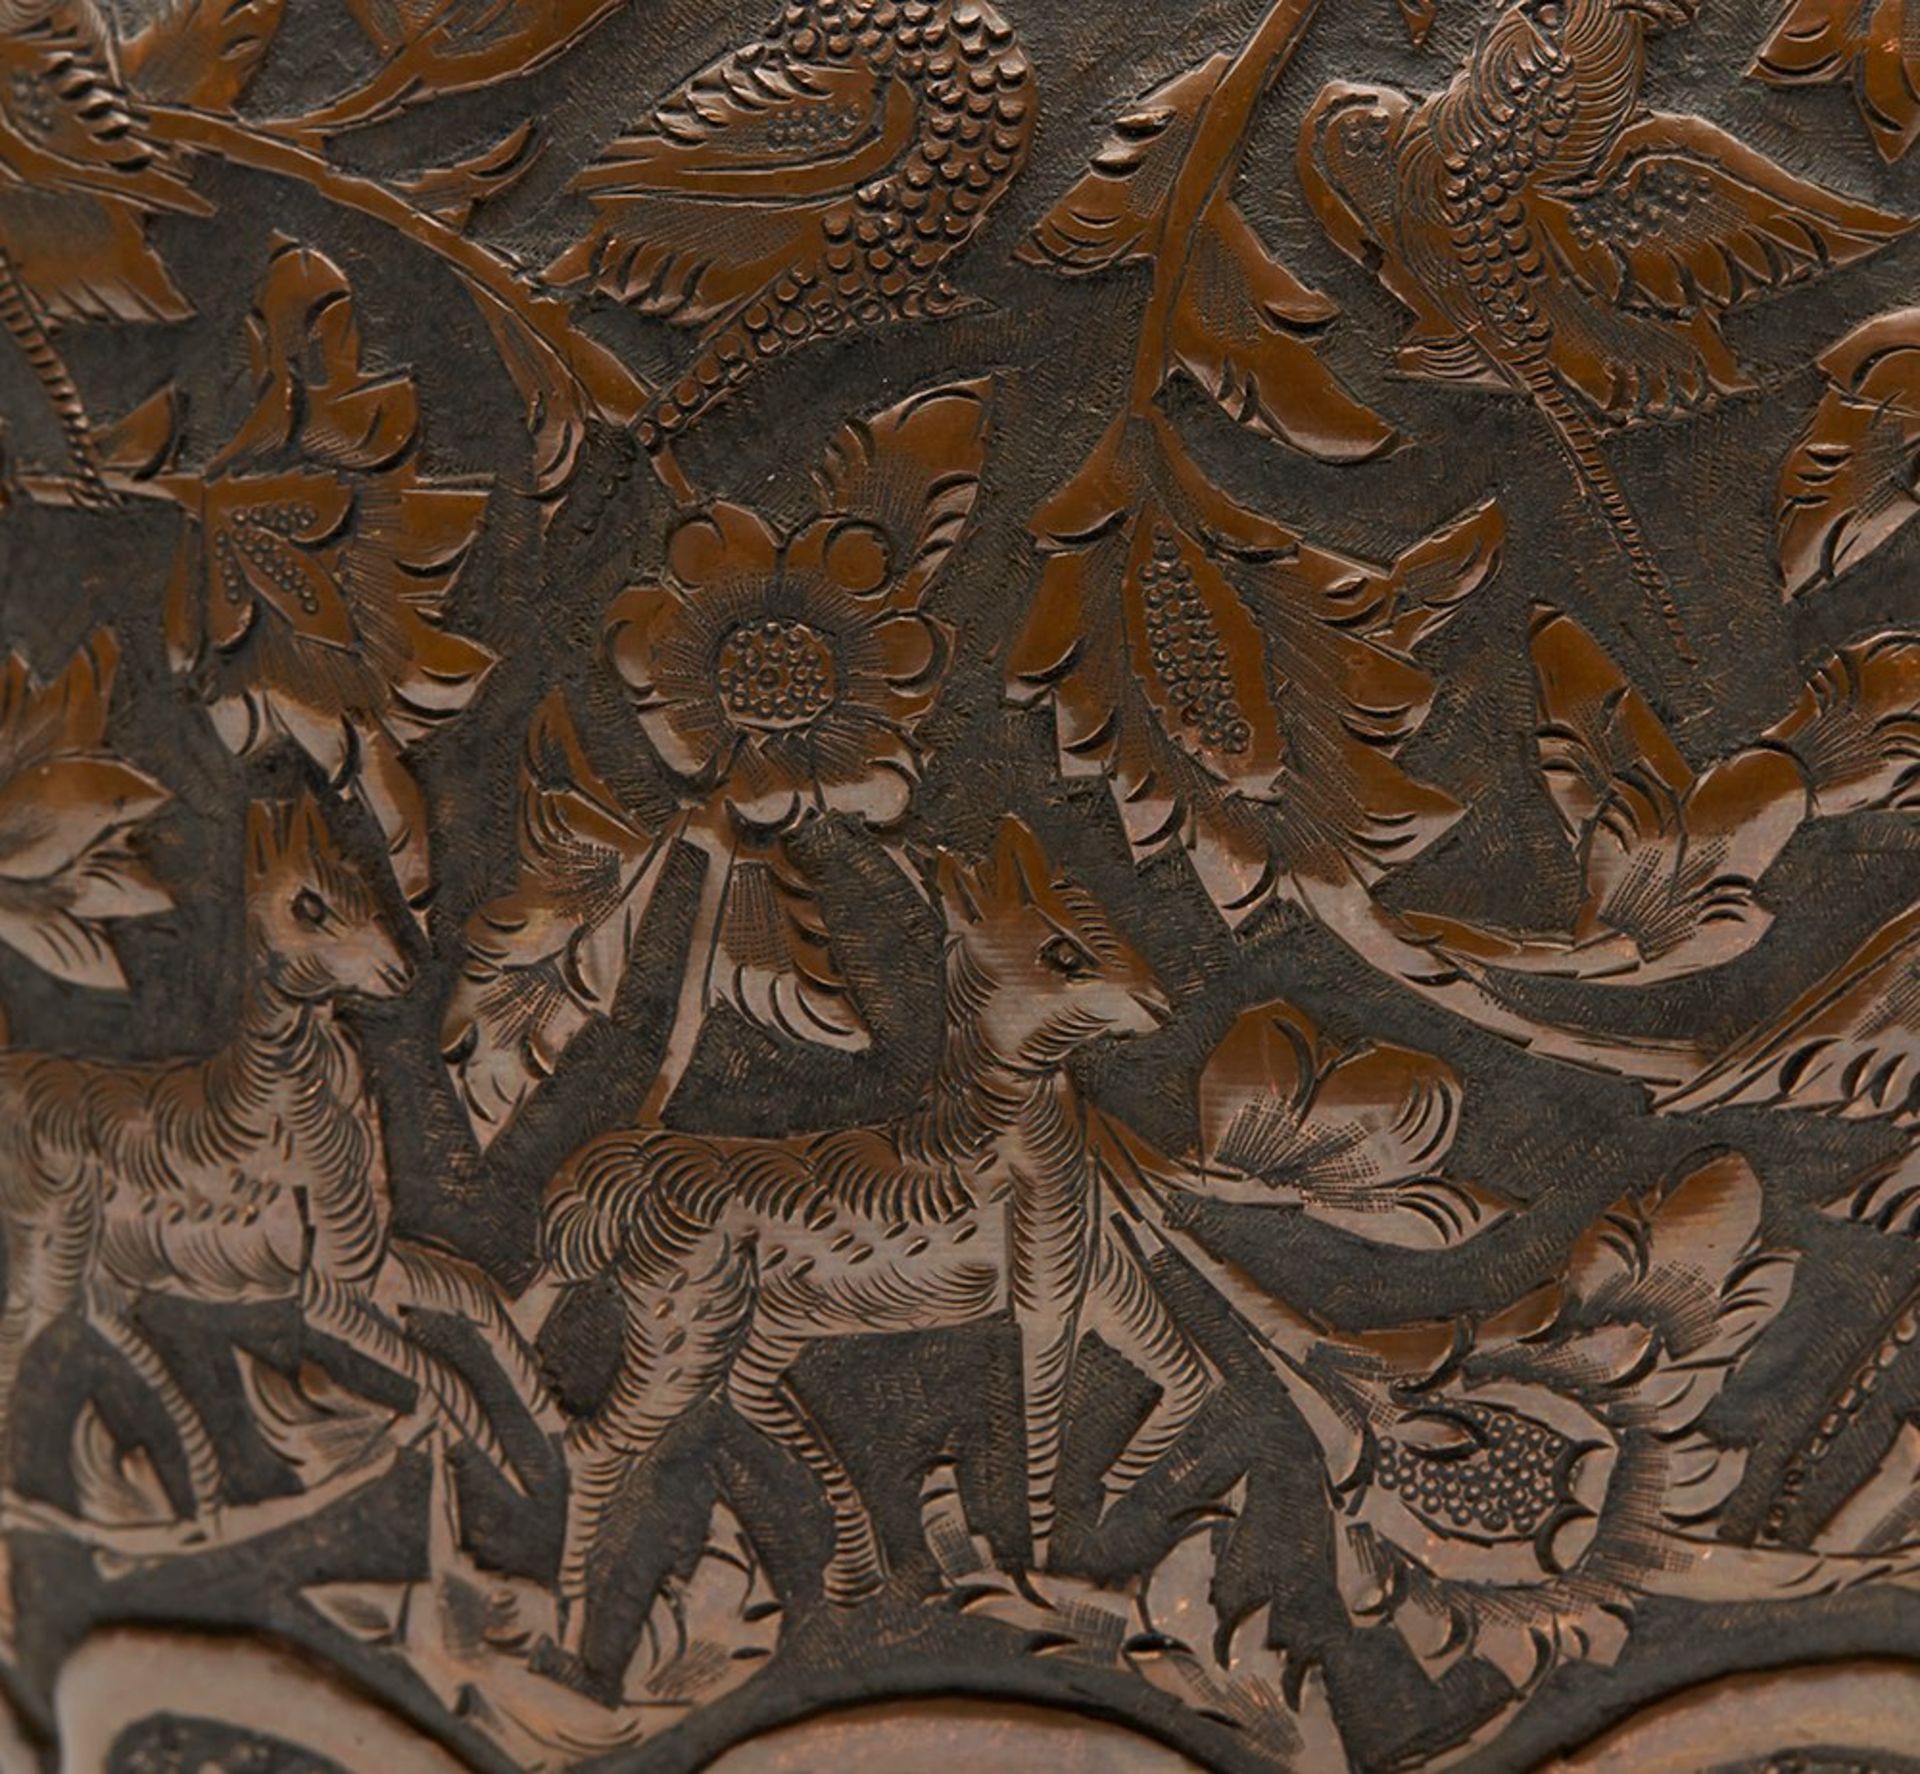 Antique Persian Copper Vase With Birds & Animals 19Th C. - Bild 2 aus 8